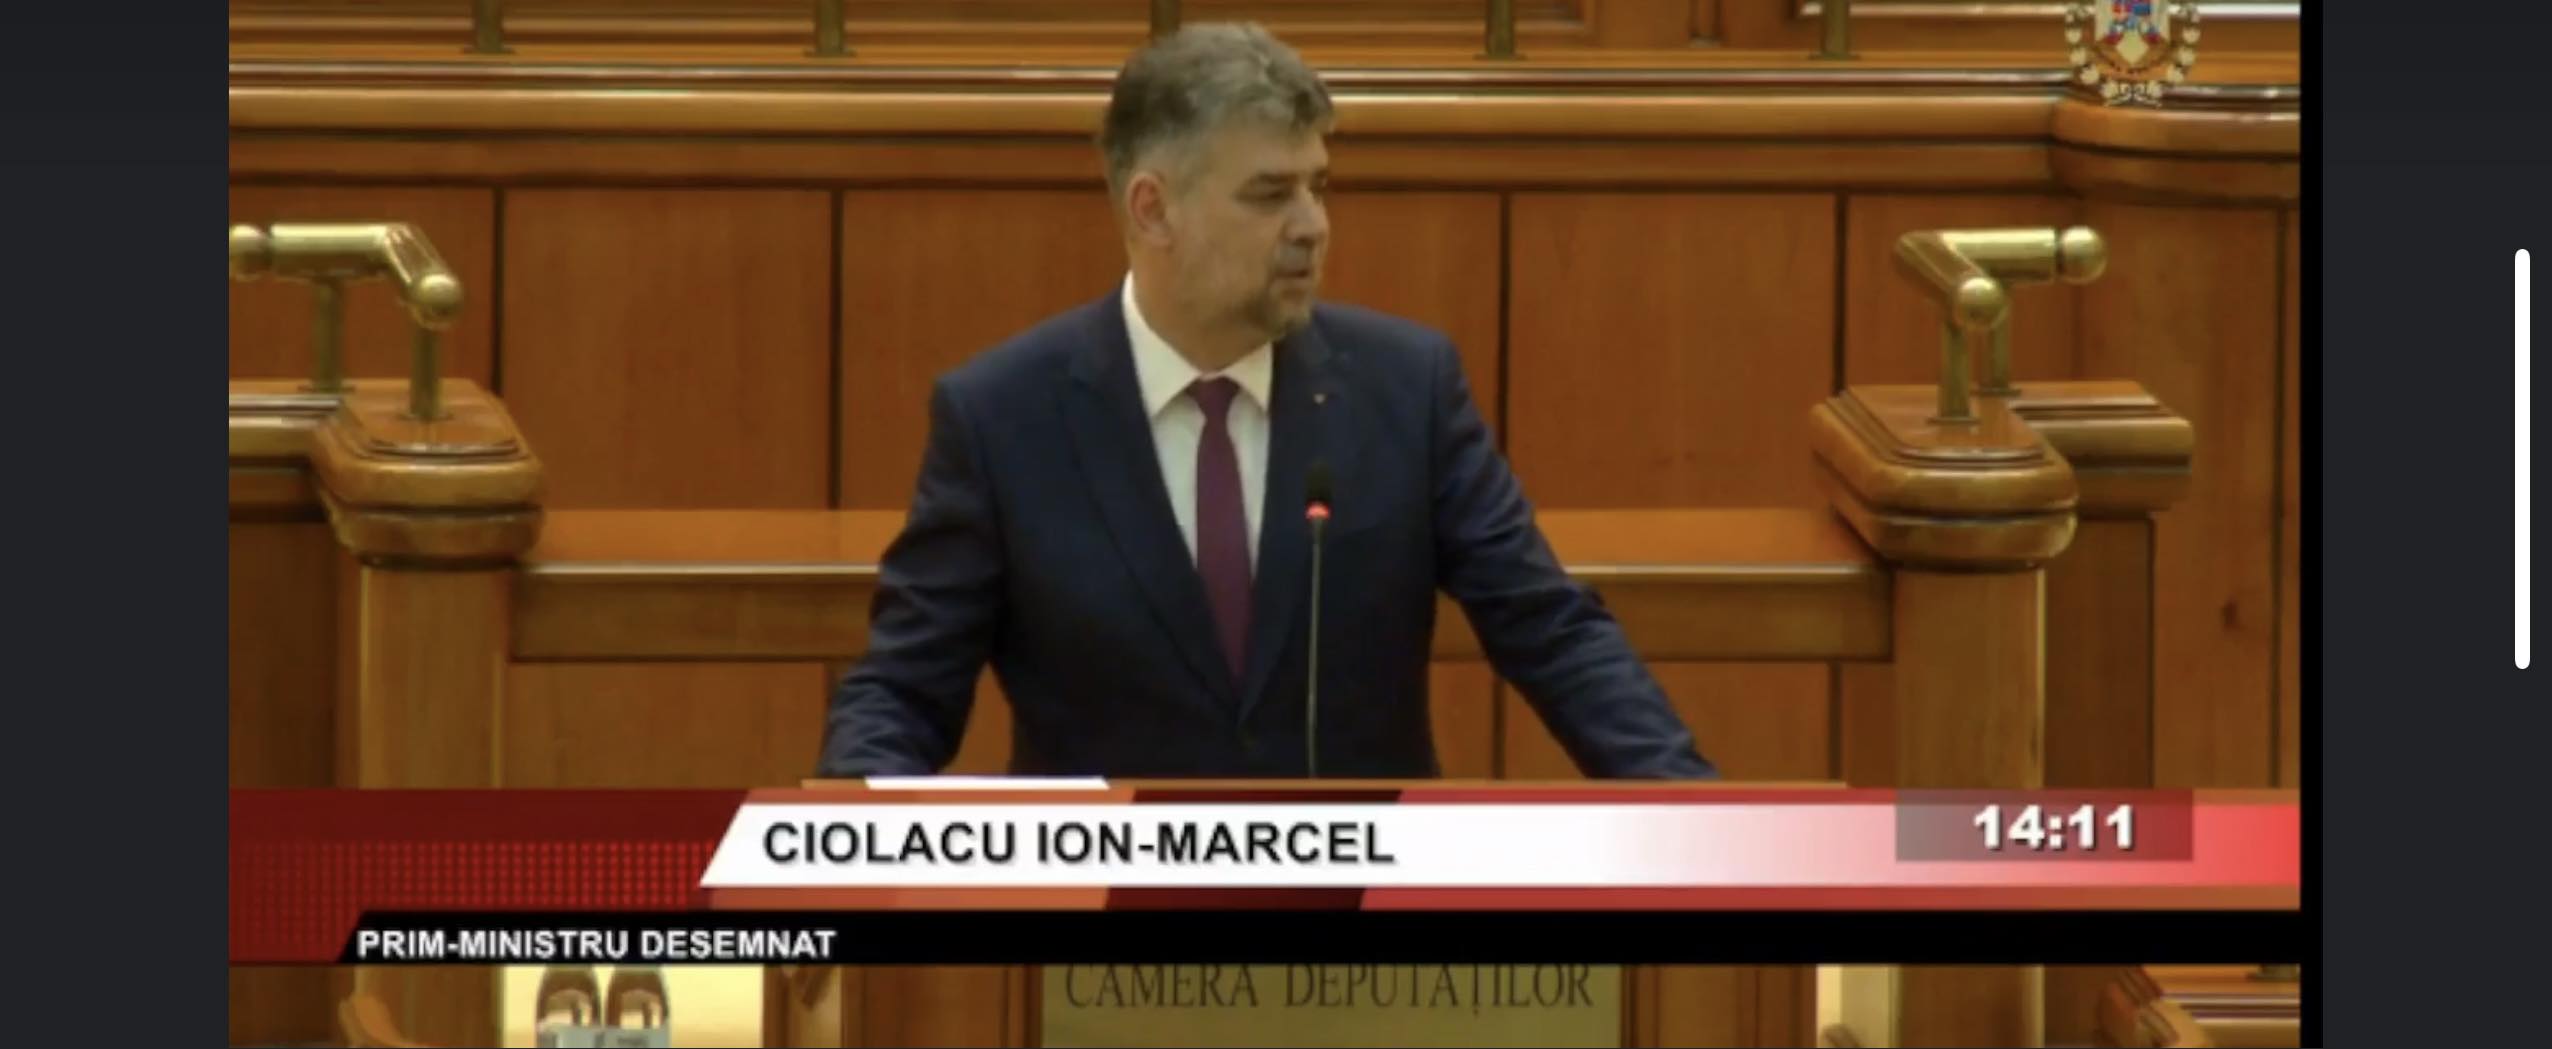 captură video: Facebook/ Parlamentul României - Camera DeputaȚilor